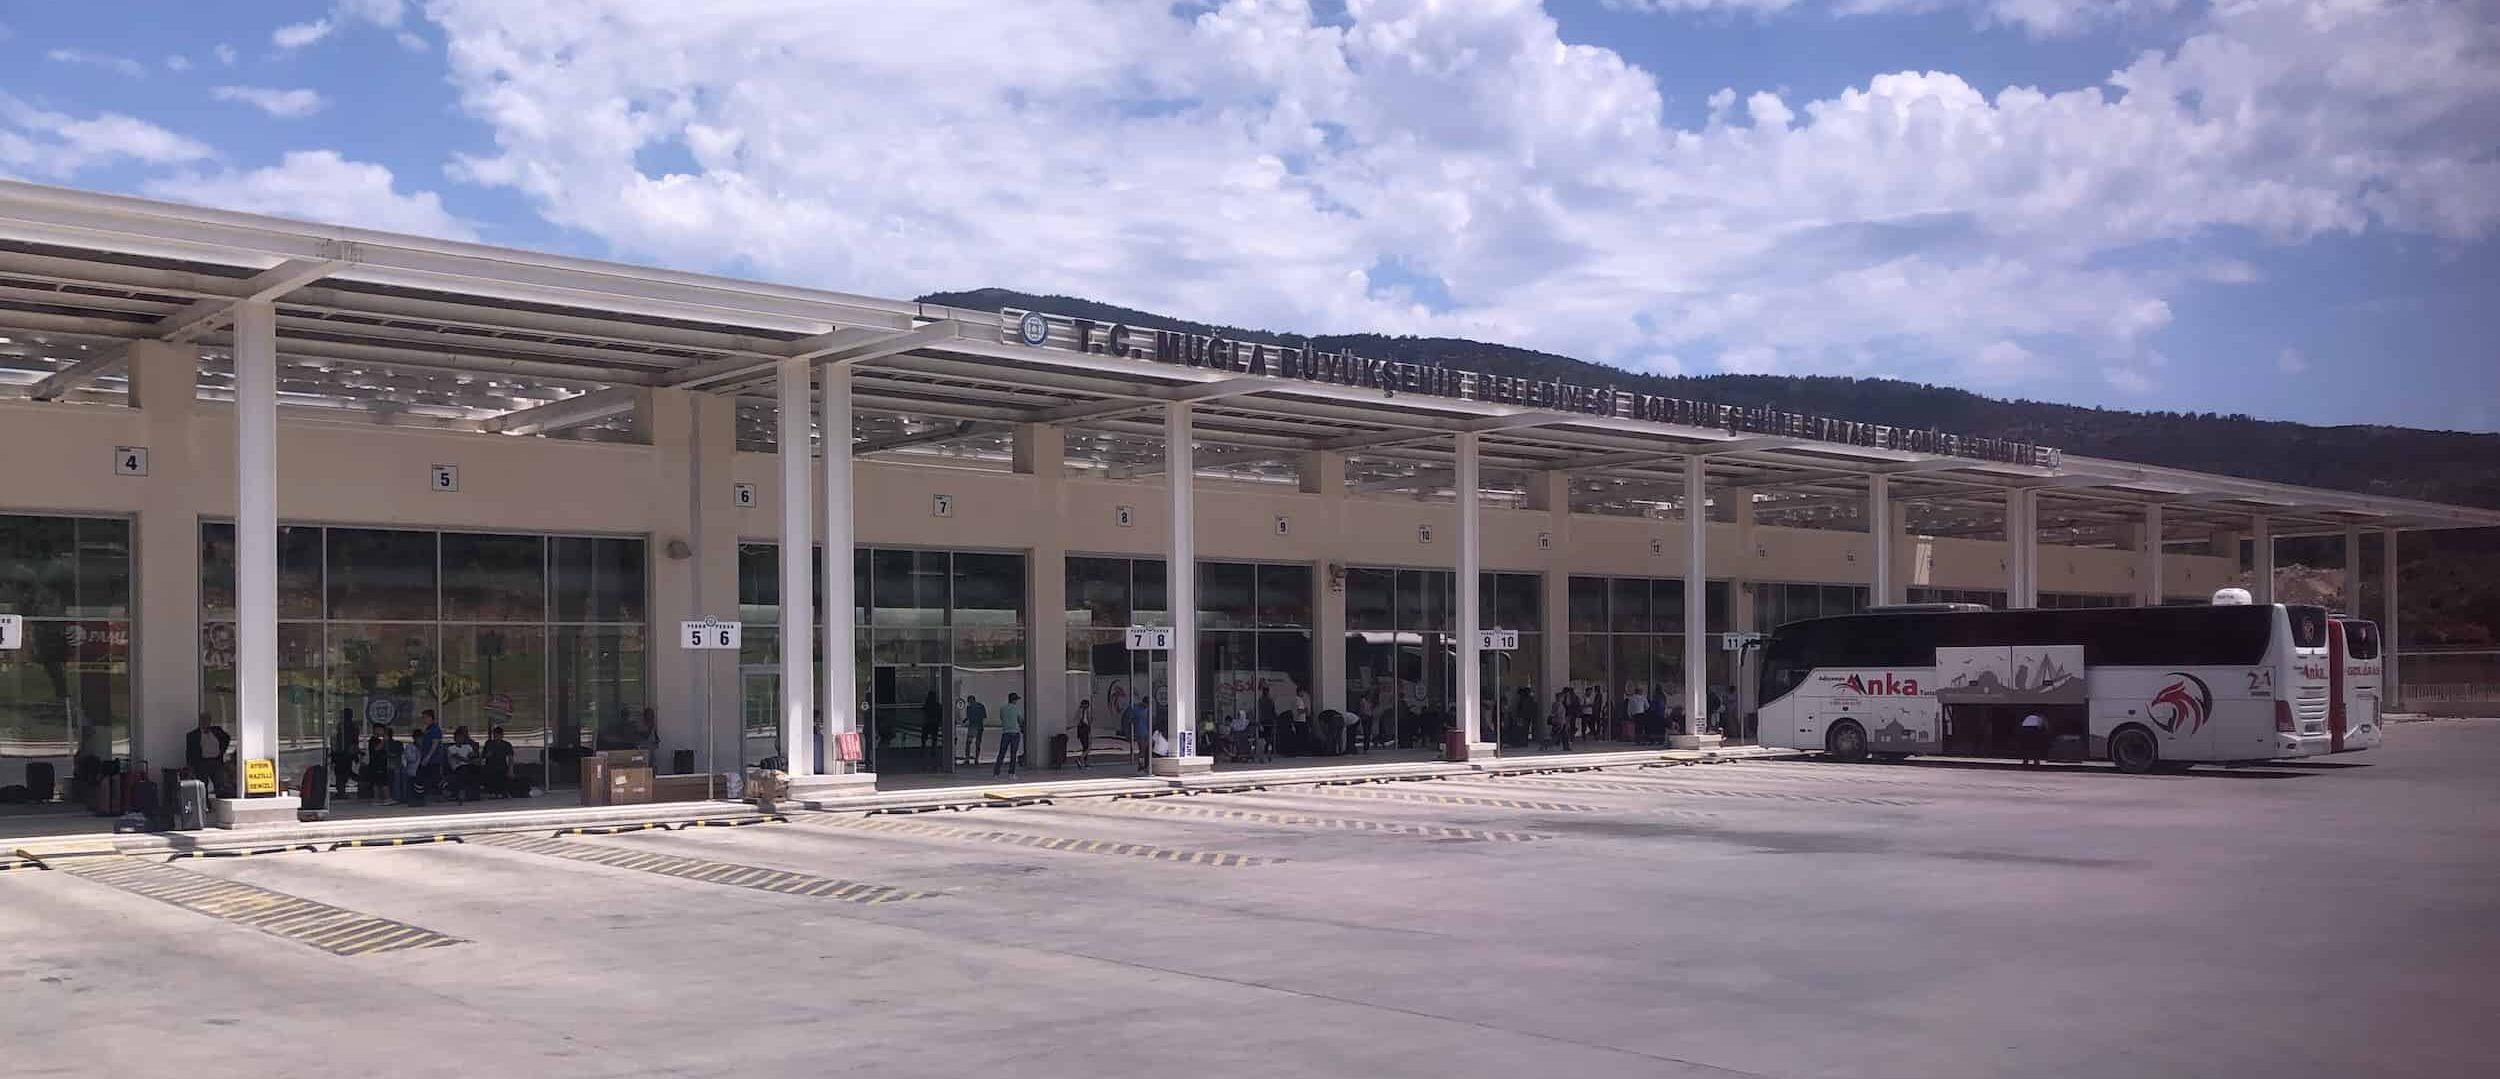 New bus terminal in Bodrum, Turkey